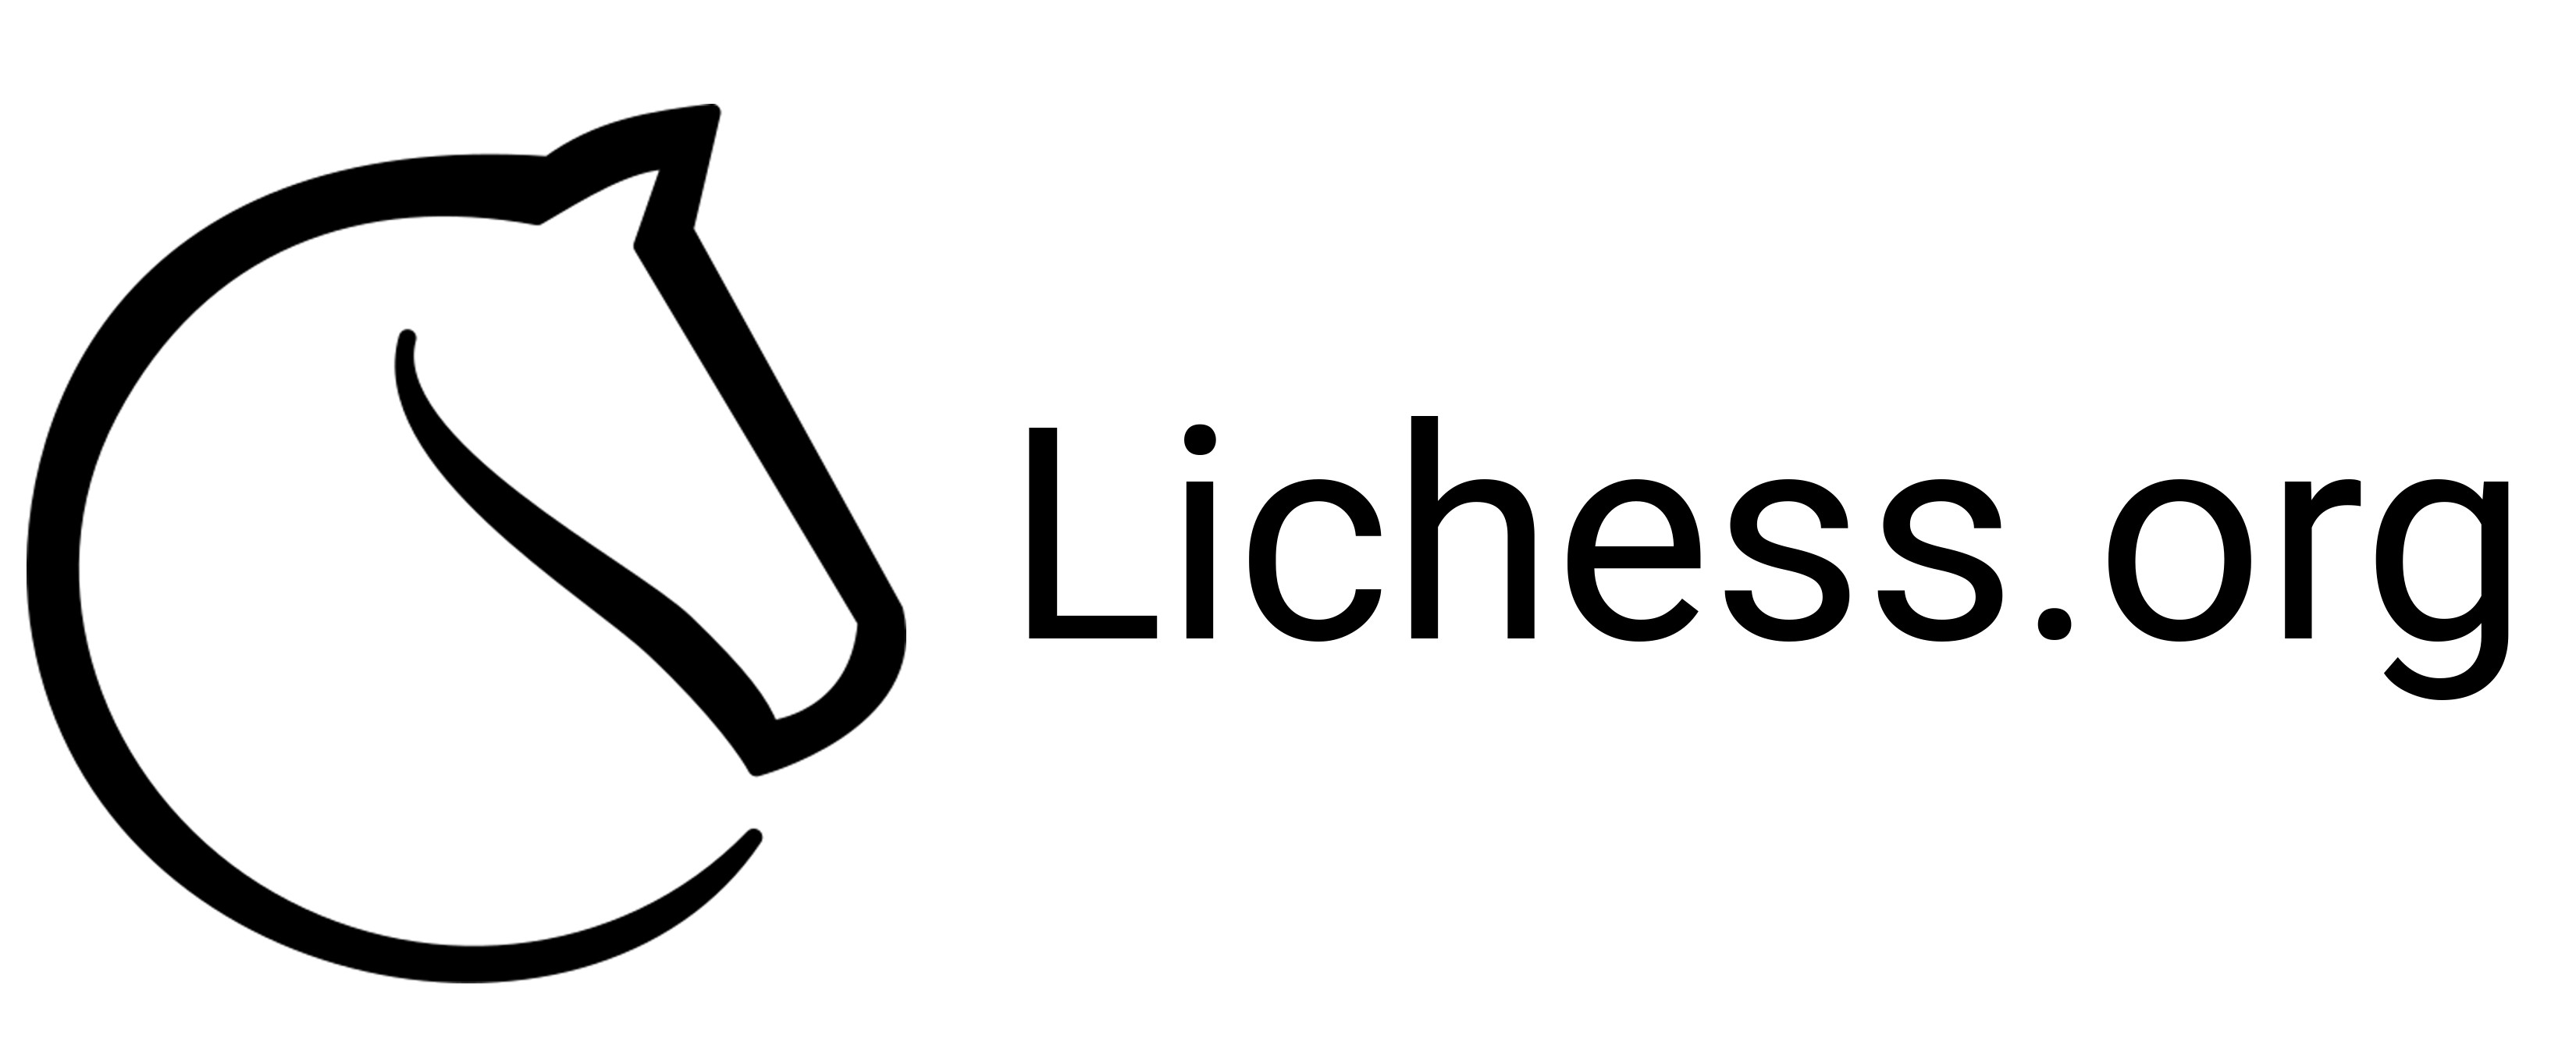 Landscape-Lichess-logo.jpg